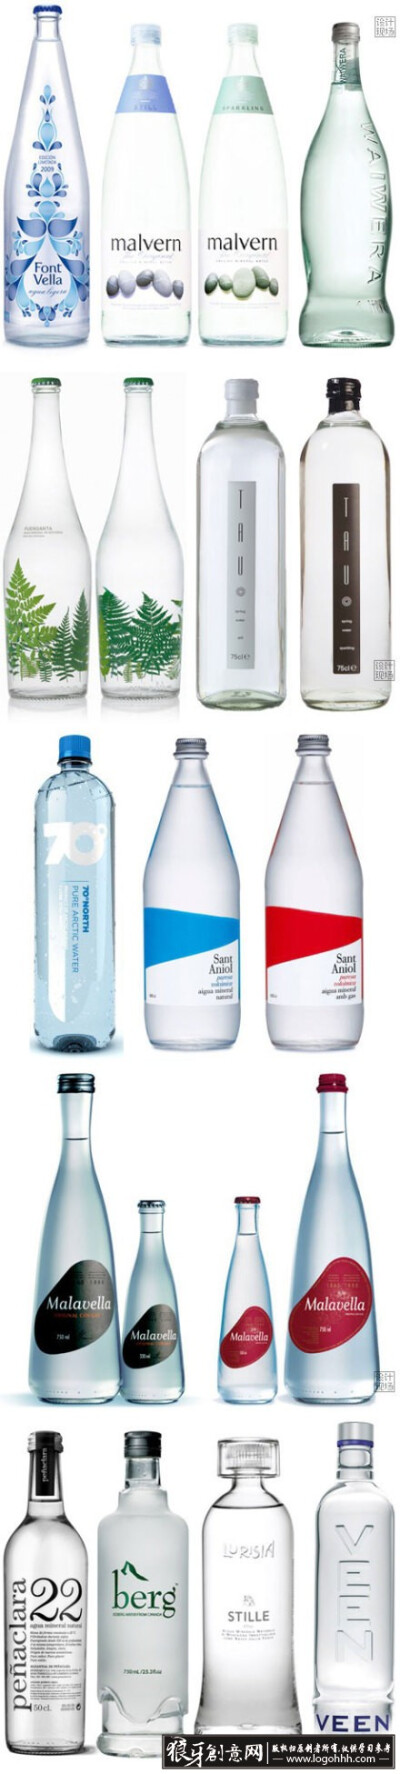 包装设计灵感 各种瓶子包装 创意瓶身设计 时尚瓶贴设计 精美瓶子包装